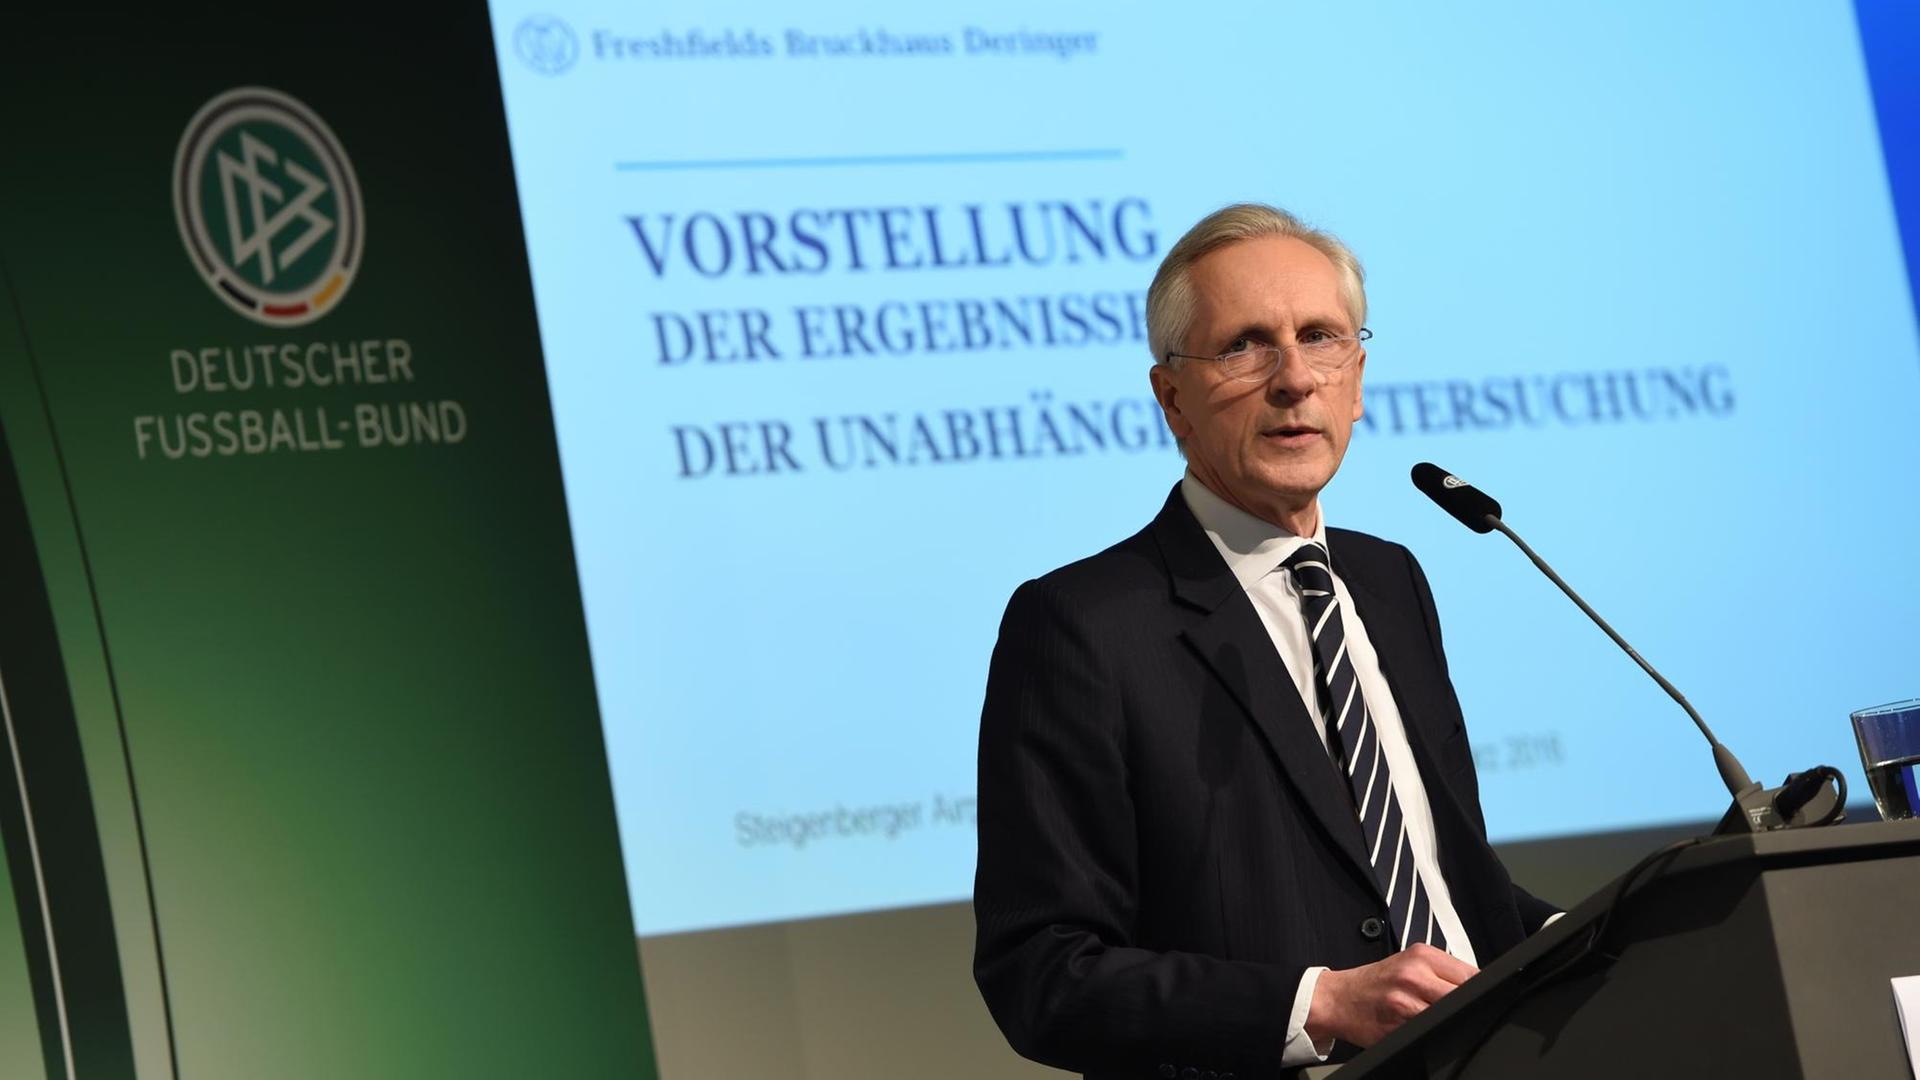 Christian Duve von der Wirtschaftskanzlei Freshfields Bruckhaus Deringer spricht in Frankfurt am Main während der Pressekonferenz zur Vorstellung des Untersuchungsberichts zur DFB-Affäre um die Vergabe der Fußball-WM 2006 nach Deutschland.